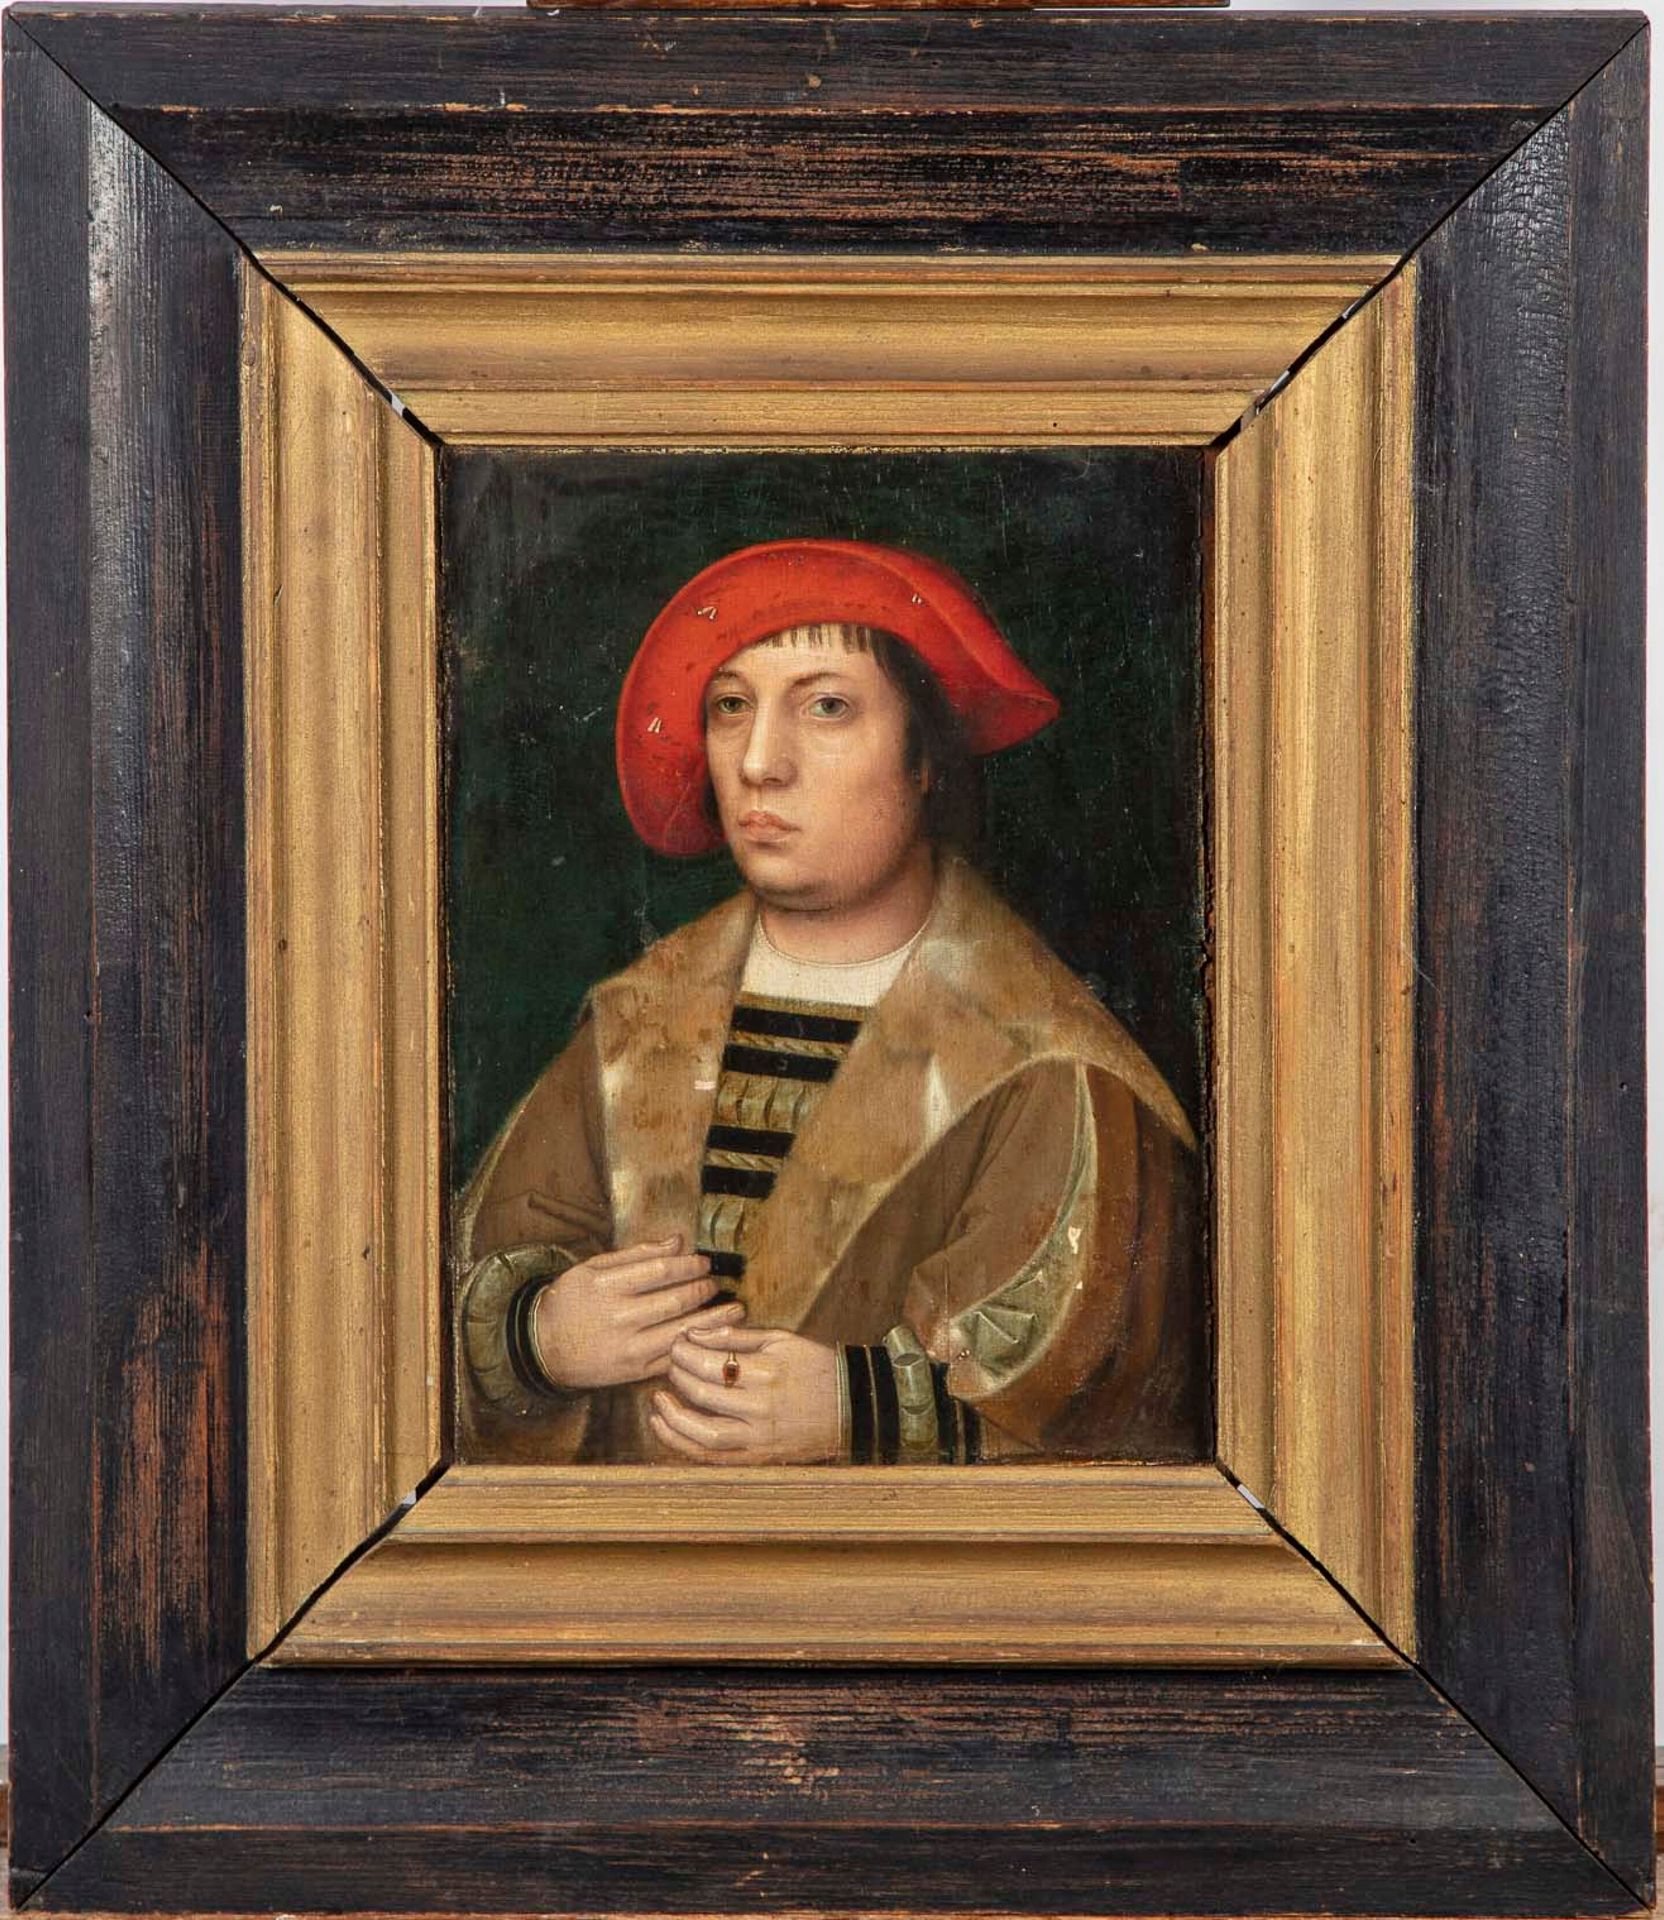 ECOLE DU NORD SCUOLA DEL NORD dalla fine del XVI secolo

Ritratto di un uomo

Ol&hellip;